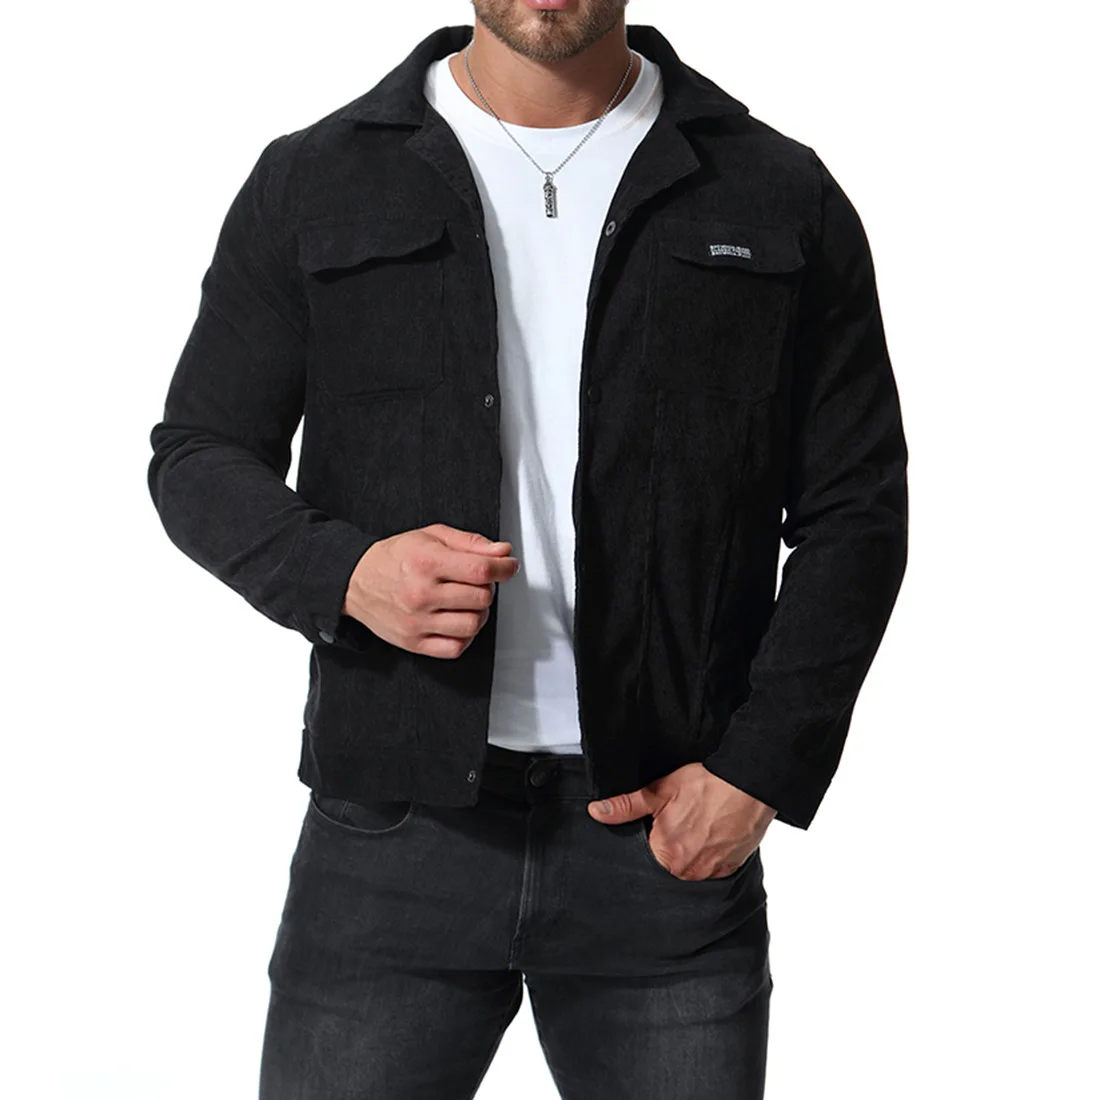 Barnd новые мужские вельветовые куртки пальто весна осень модные высококачественные мужские черные повседневные куртки пальто мужская одежда верхняя одежда BF3083